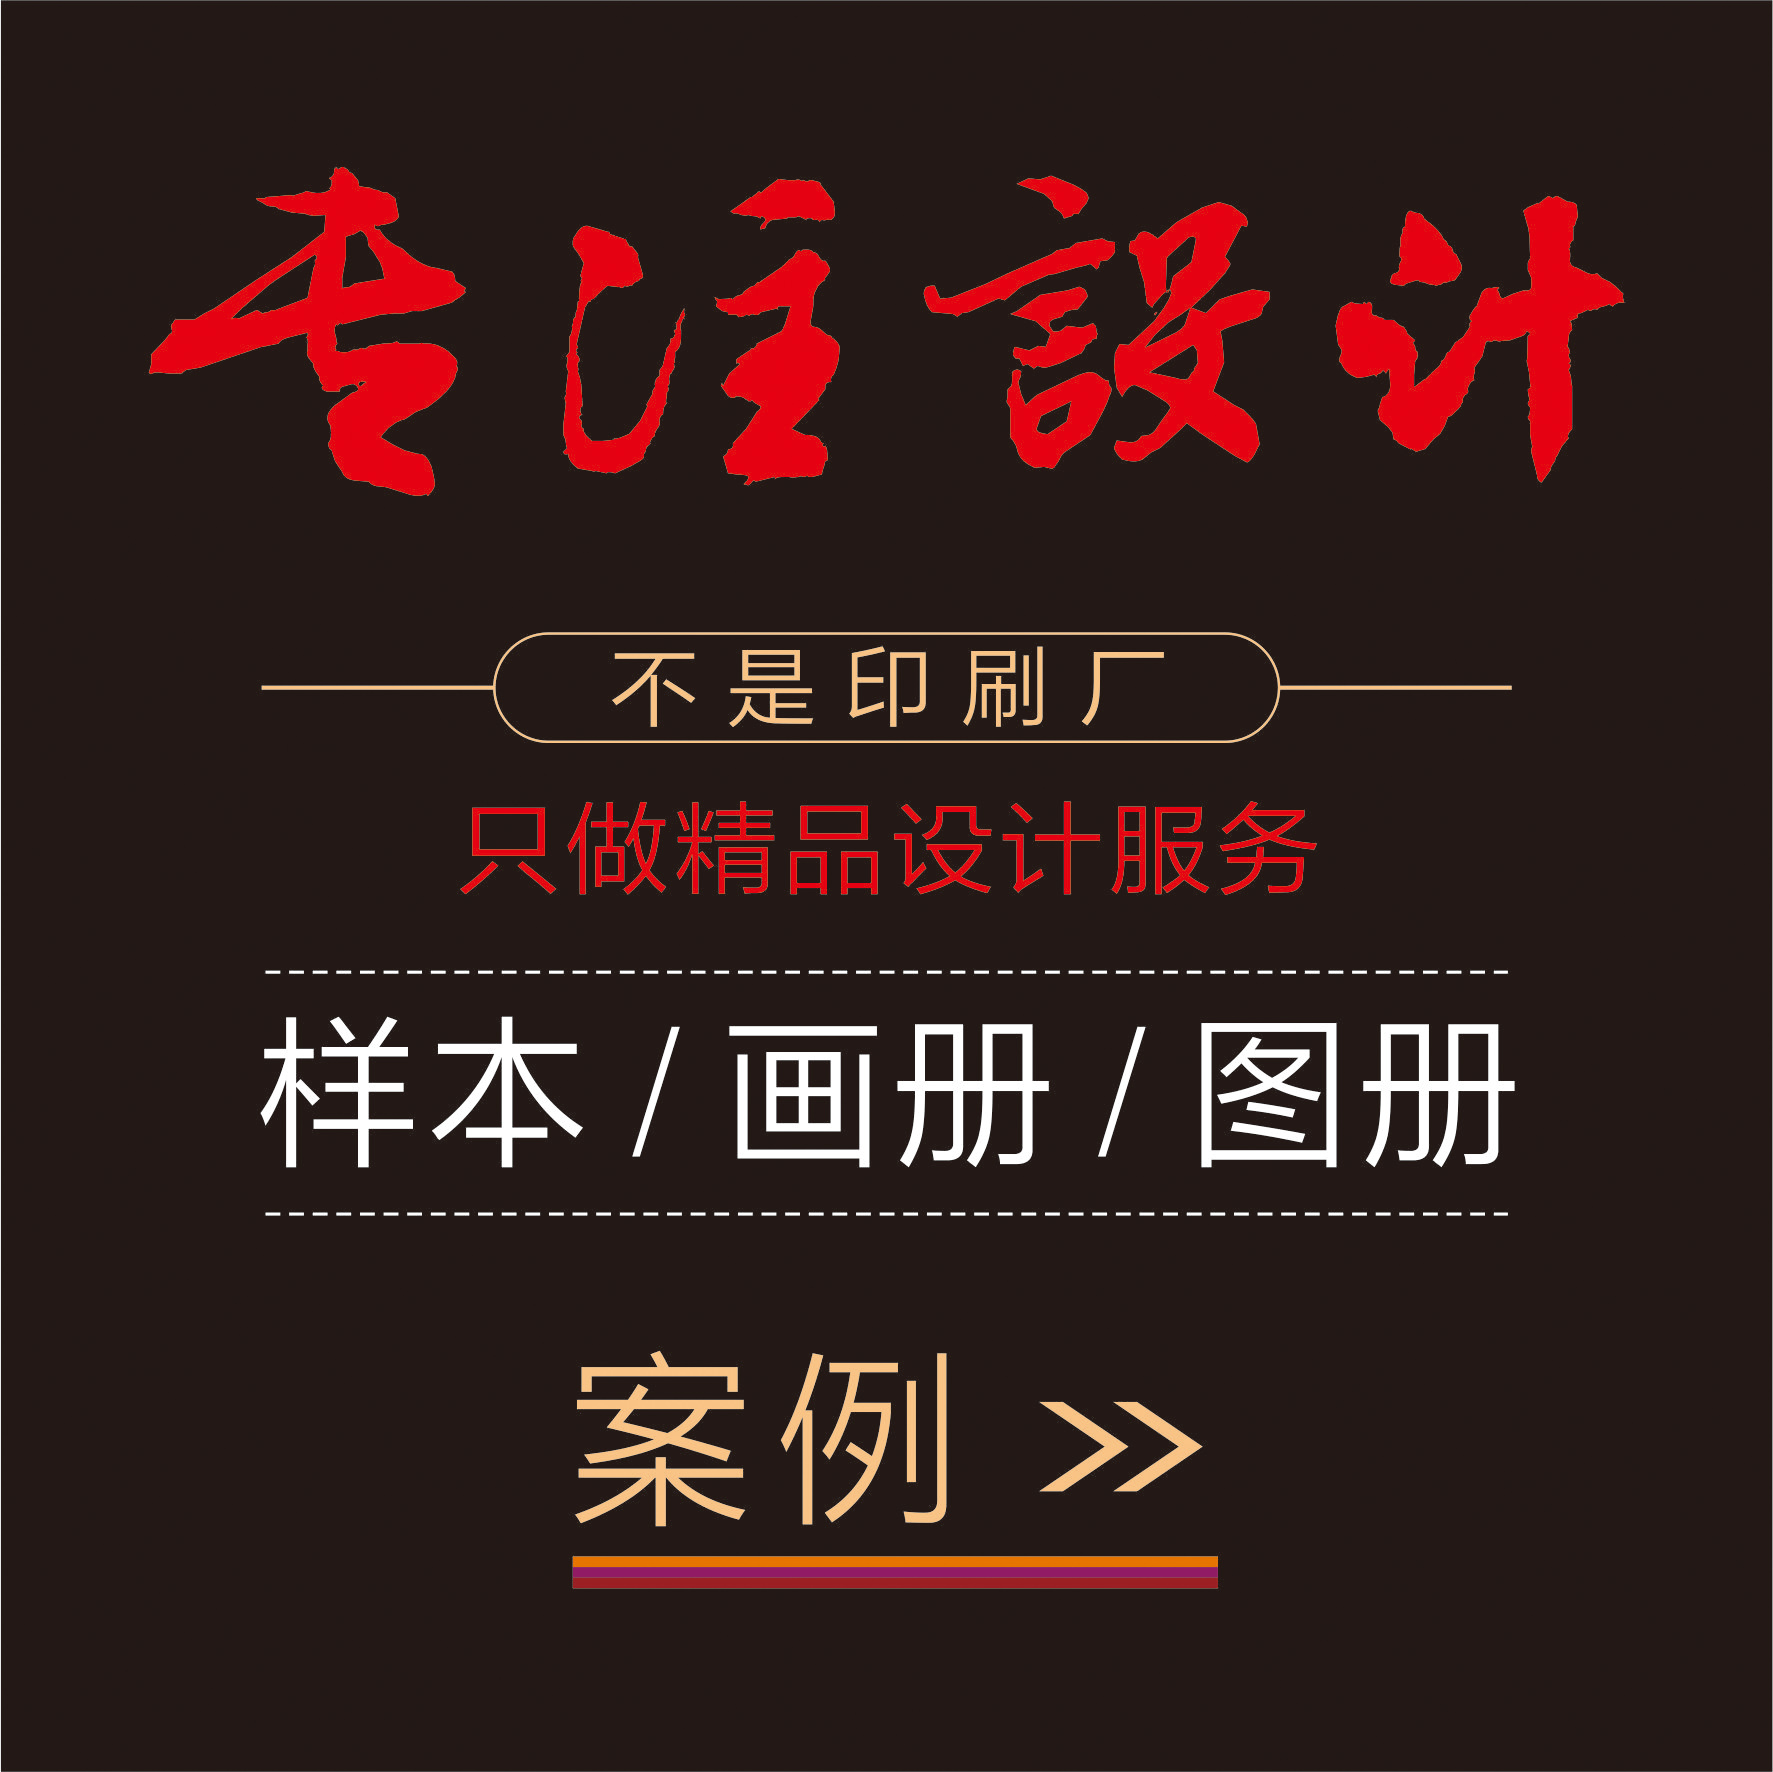 杭州目录设计印刷、宣传册设计、画册样本设计印刷